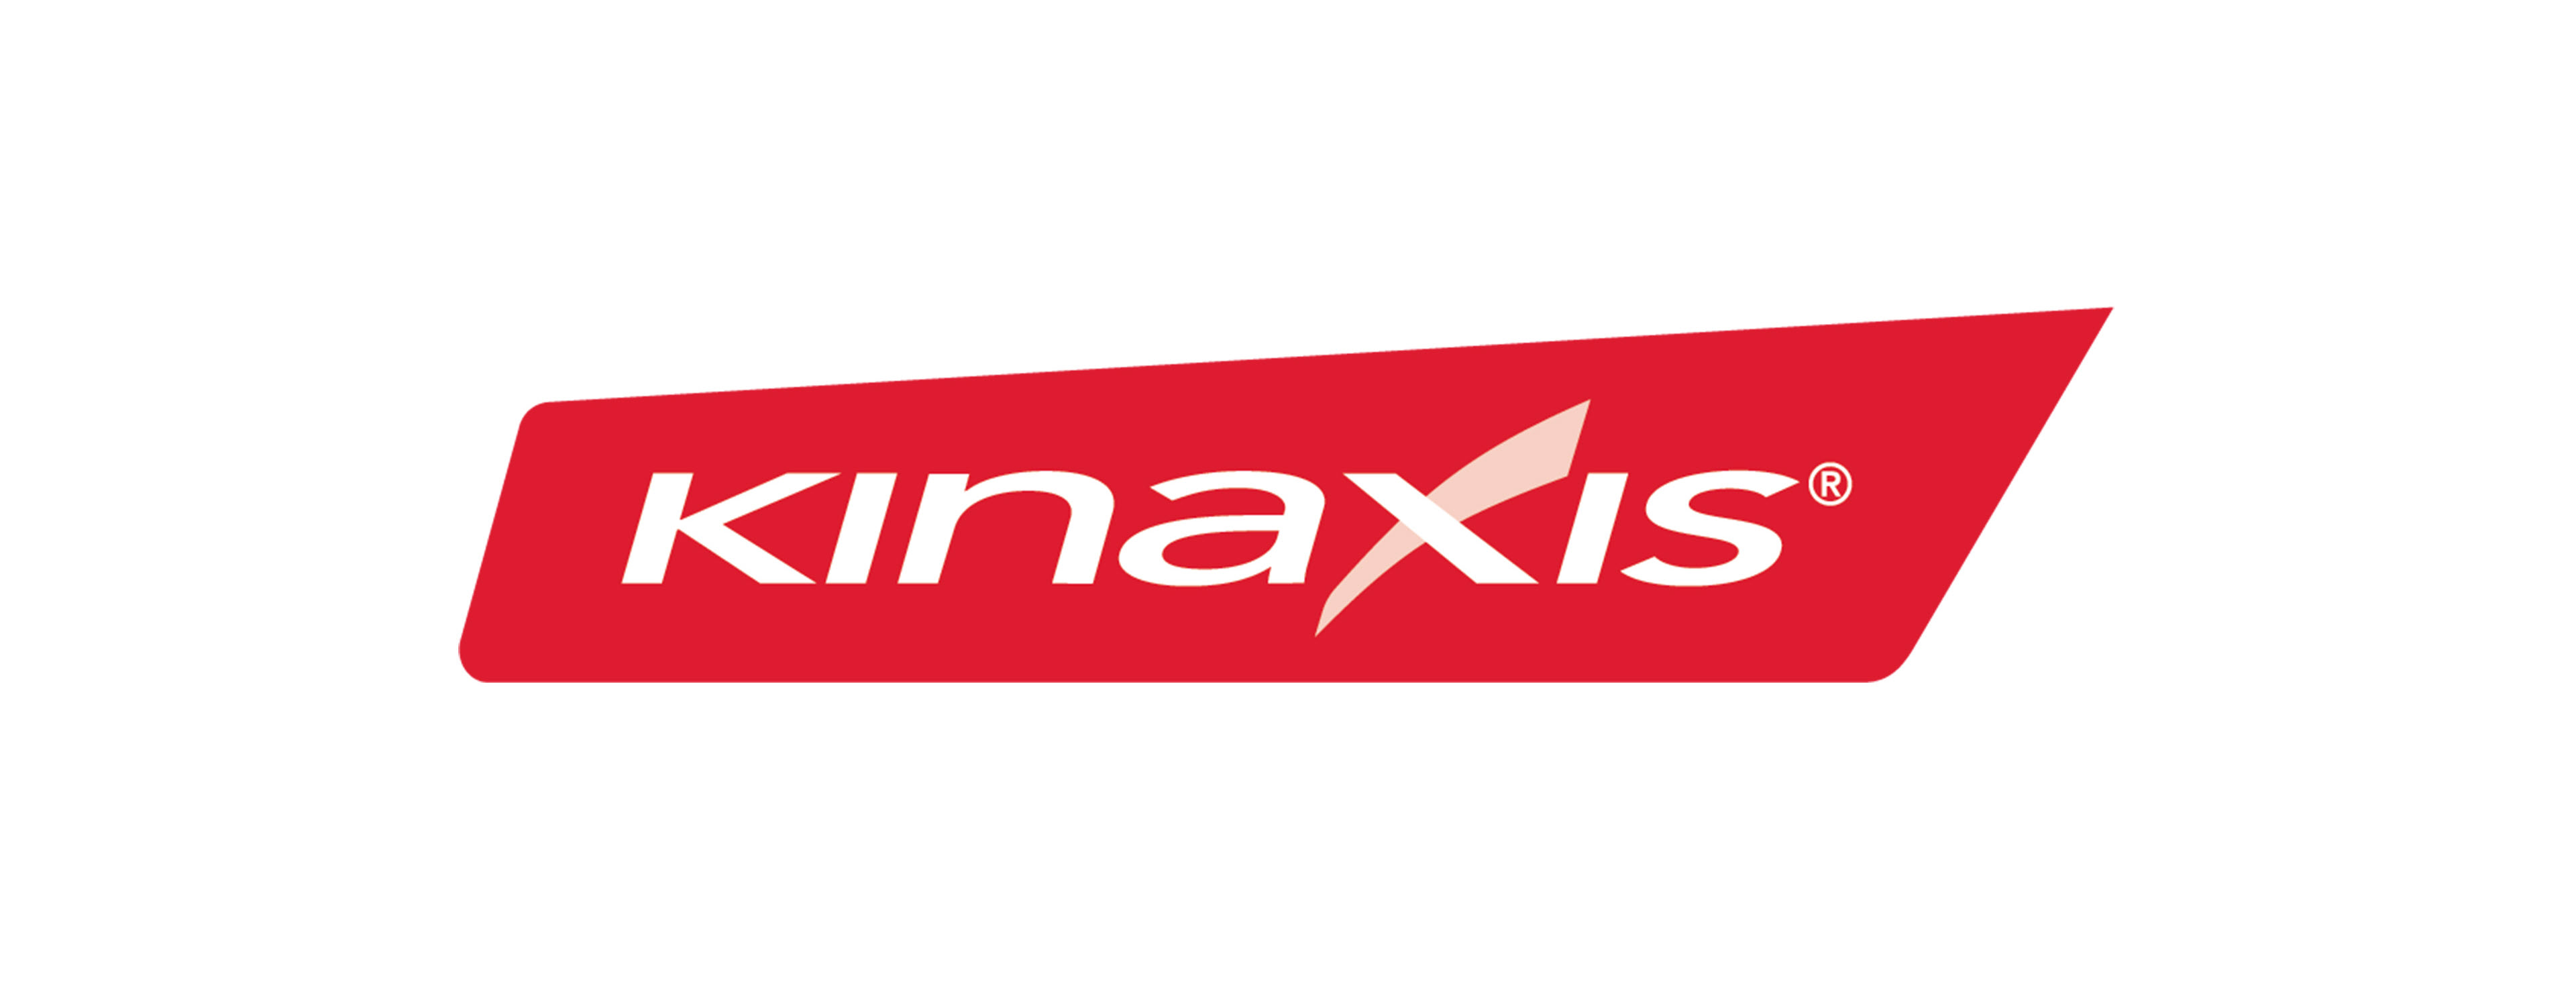             Logo Kinaxis        